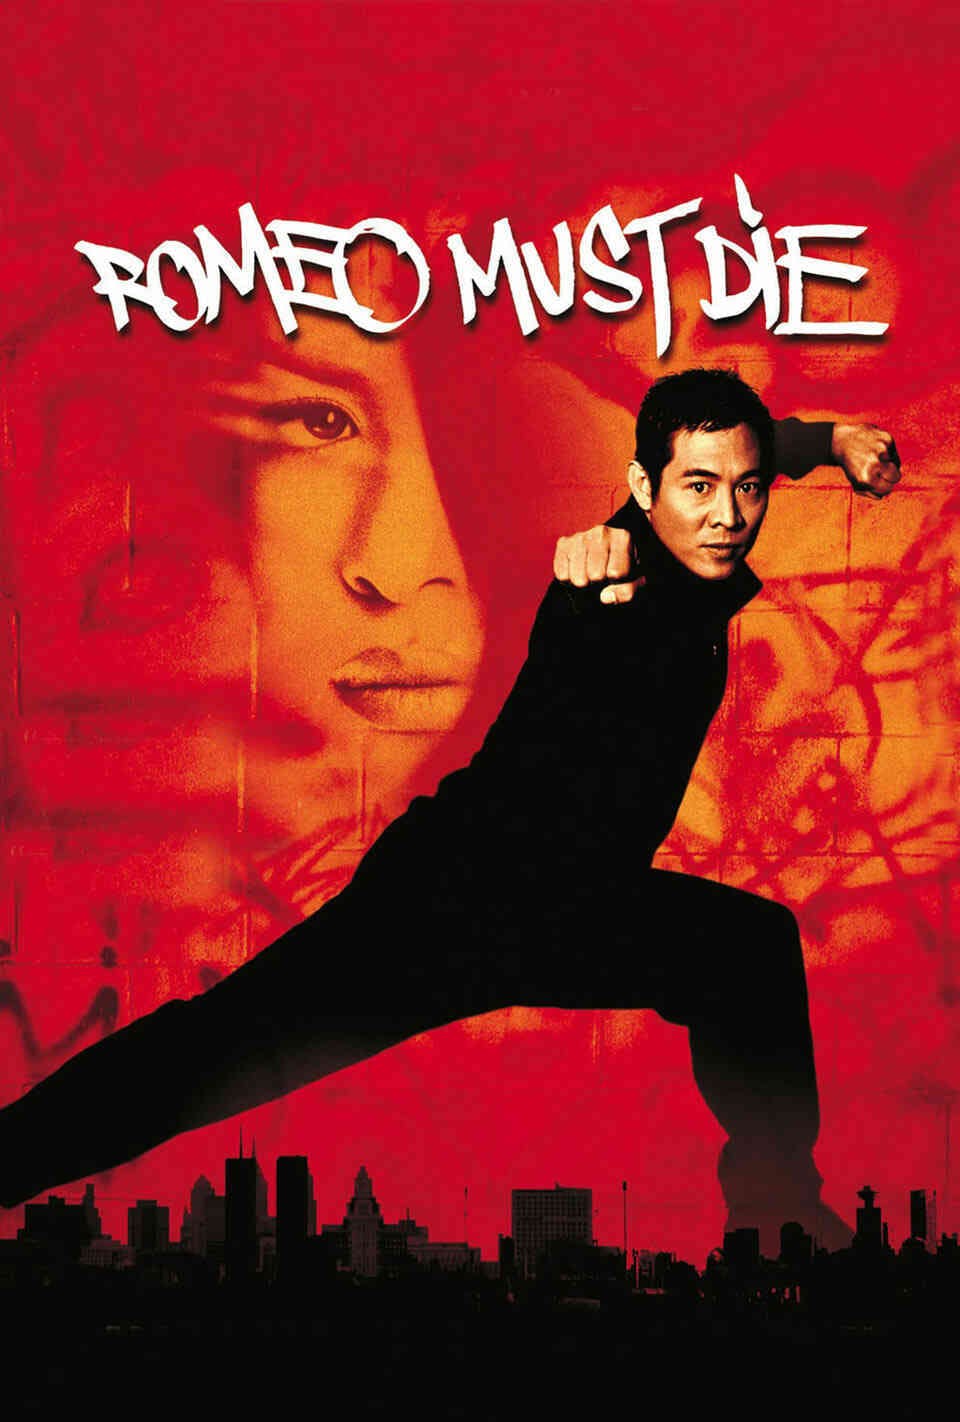 Read Romeo Must Die screenplay (poster)